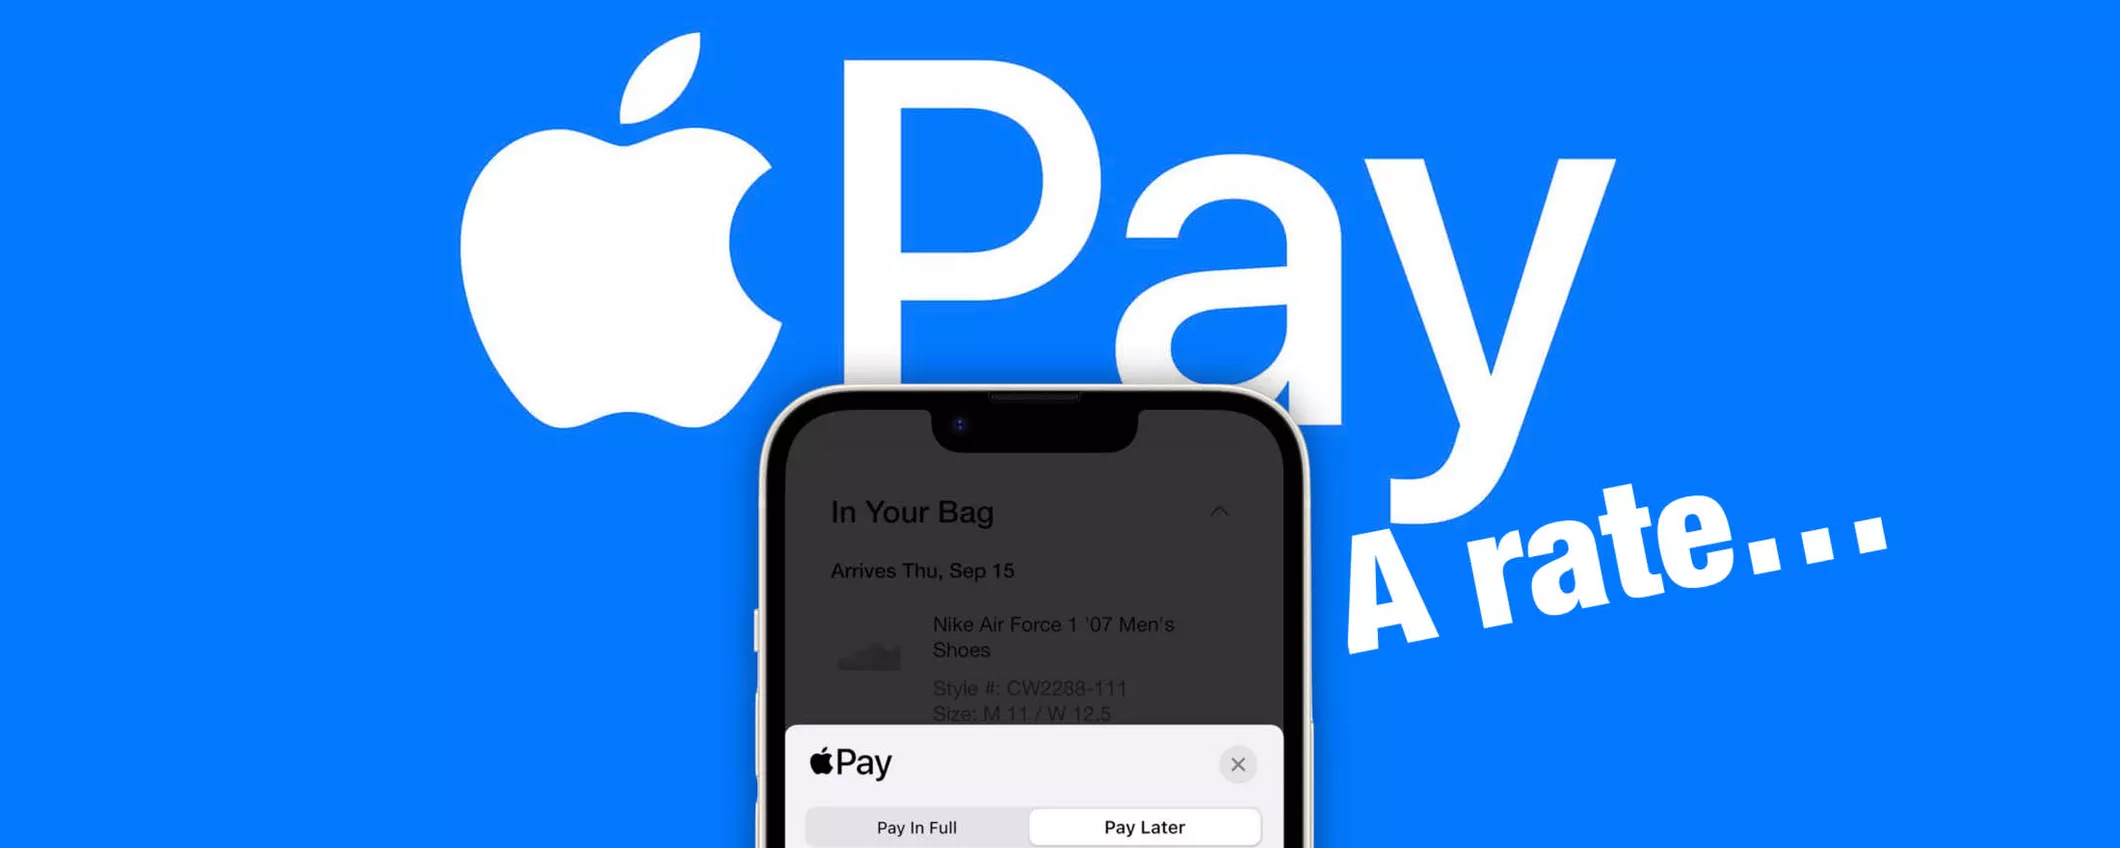 Apple Pay Later: come funziona il servizio per dilazionare i pagamenti